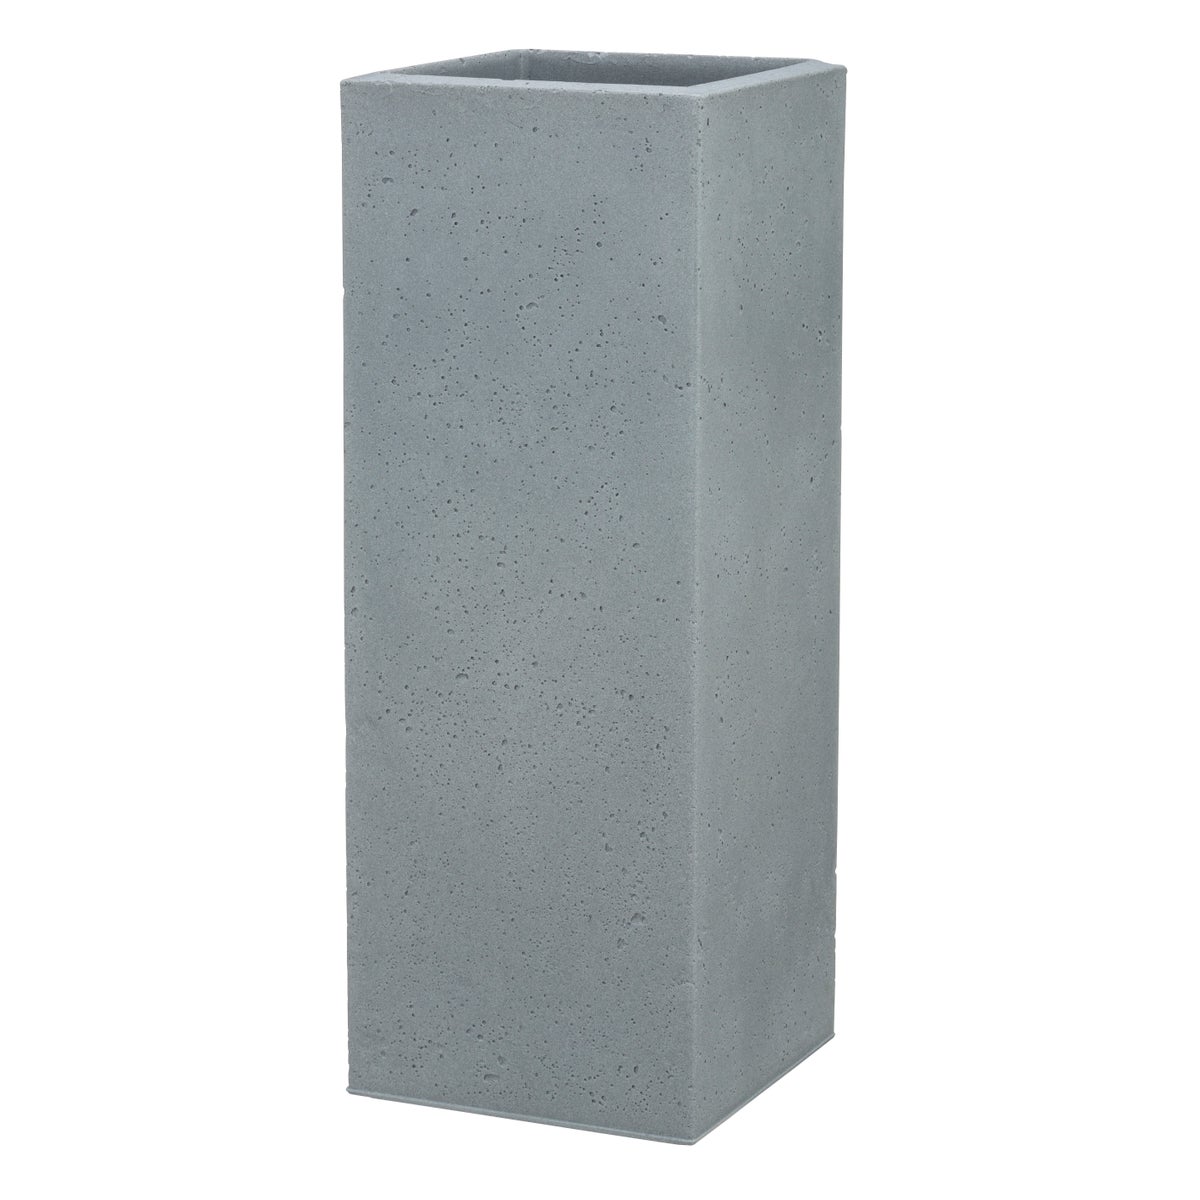 Scheurich C-Cube High 70, Hochgefäß/Blumentopf/Pflanzkübel, quadratisch,  aus Kunststoff Farbe: Stony Grey, 26 cm Durchmesser, 69,8 cm hoch, 9 l Vol.